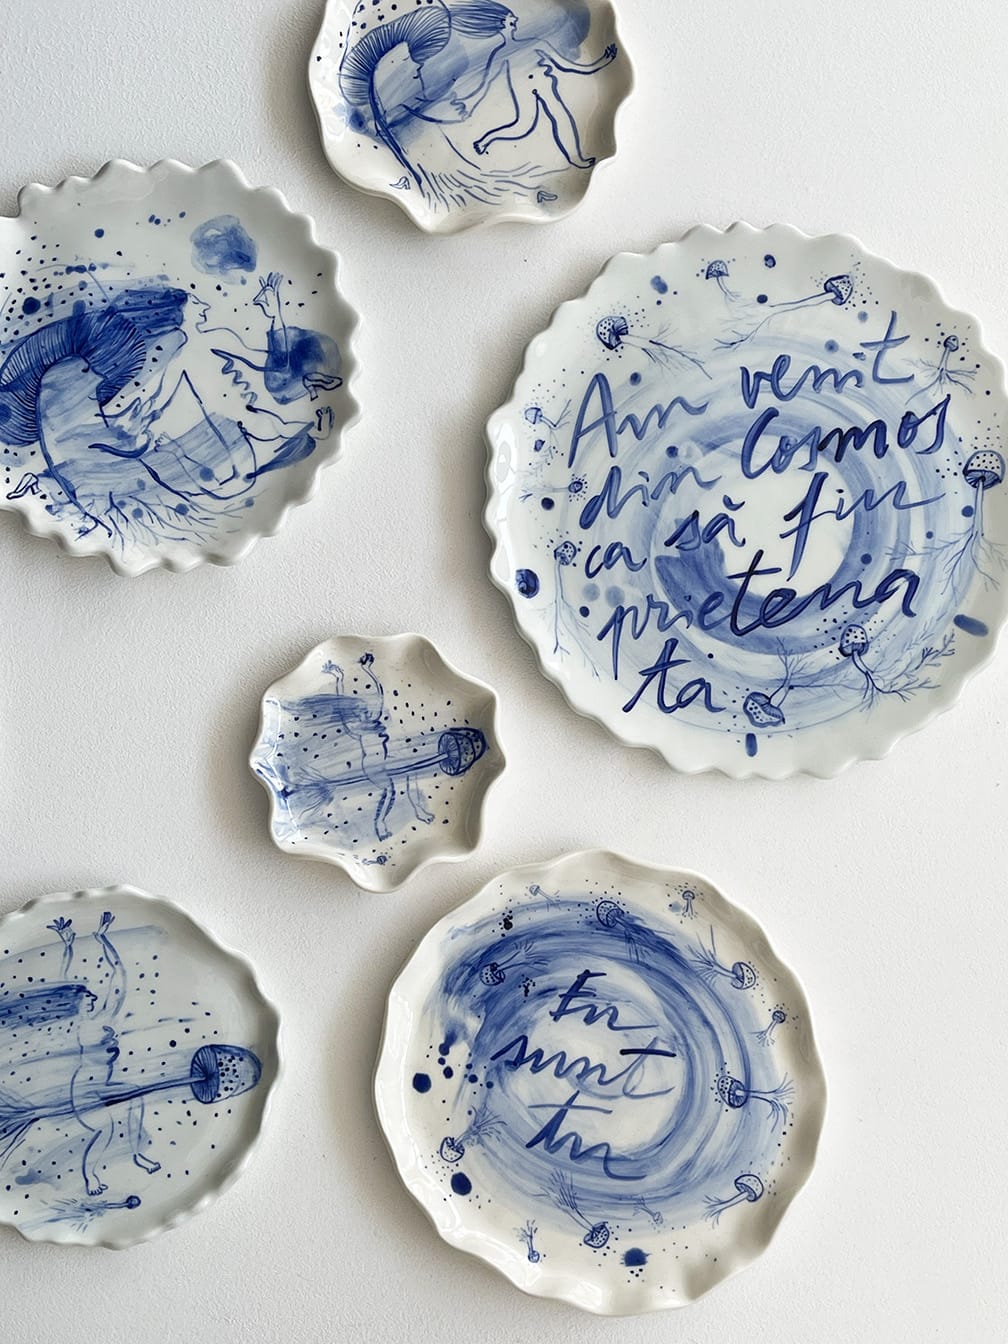 Hand-illustriertes dekoratives Teller Set I Set of hand-illustrated  decorative plates RATTE MAL